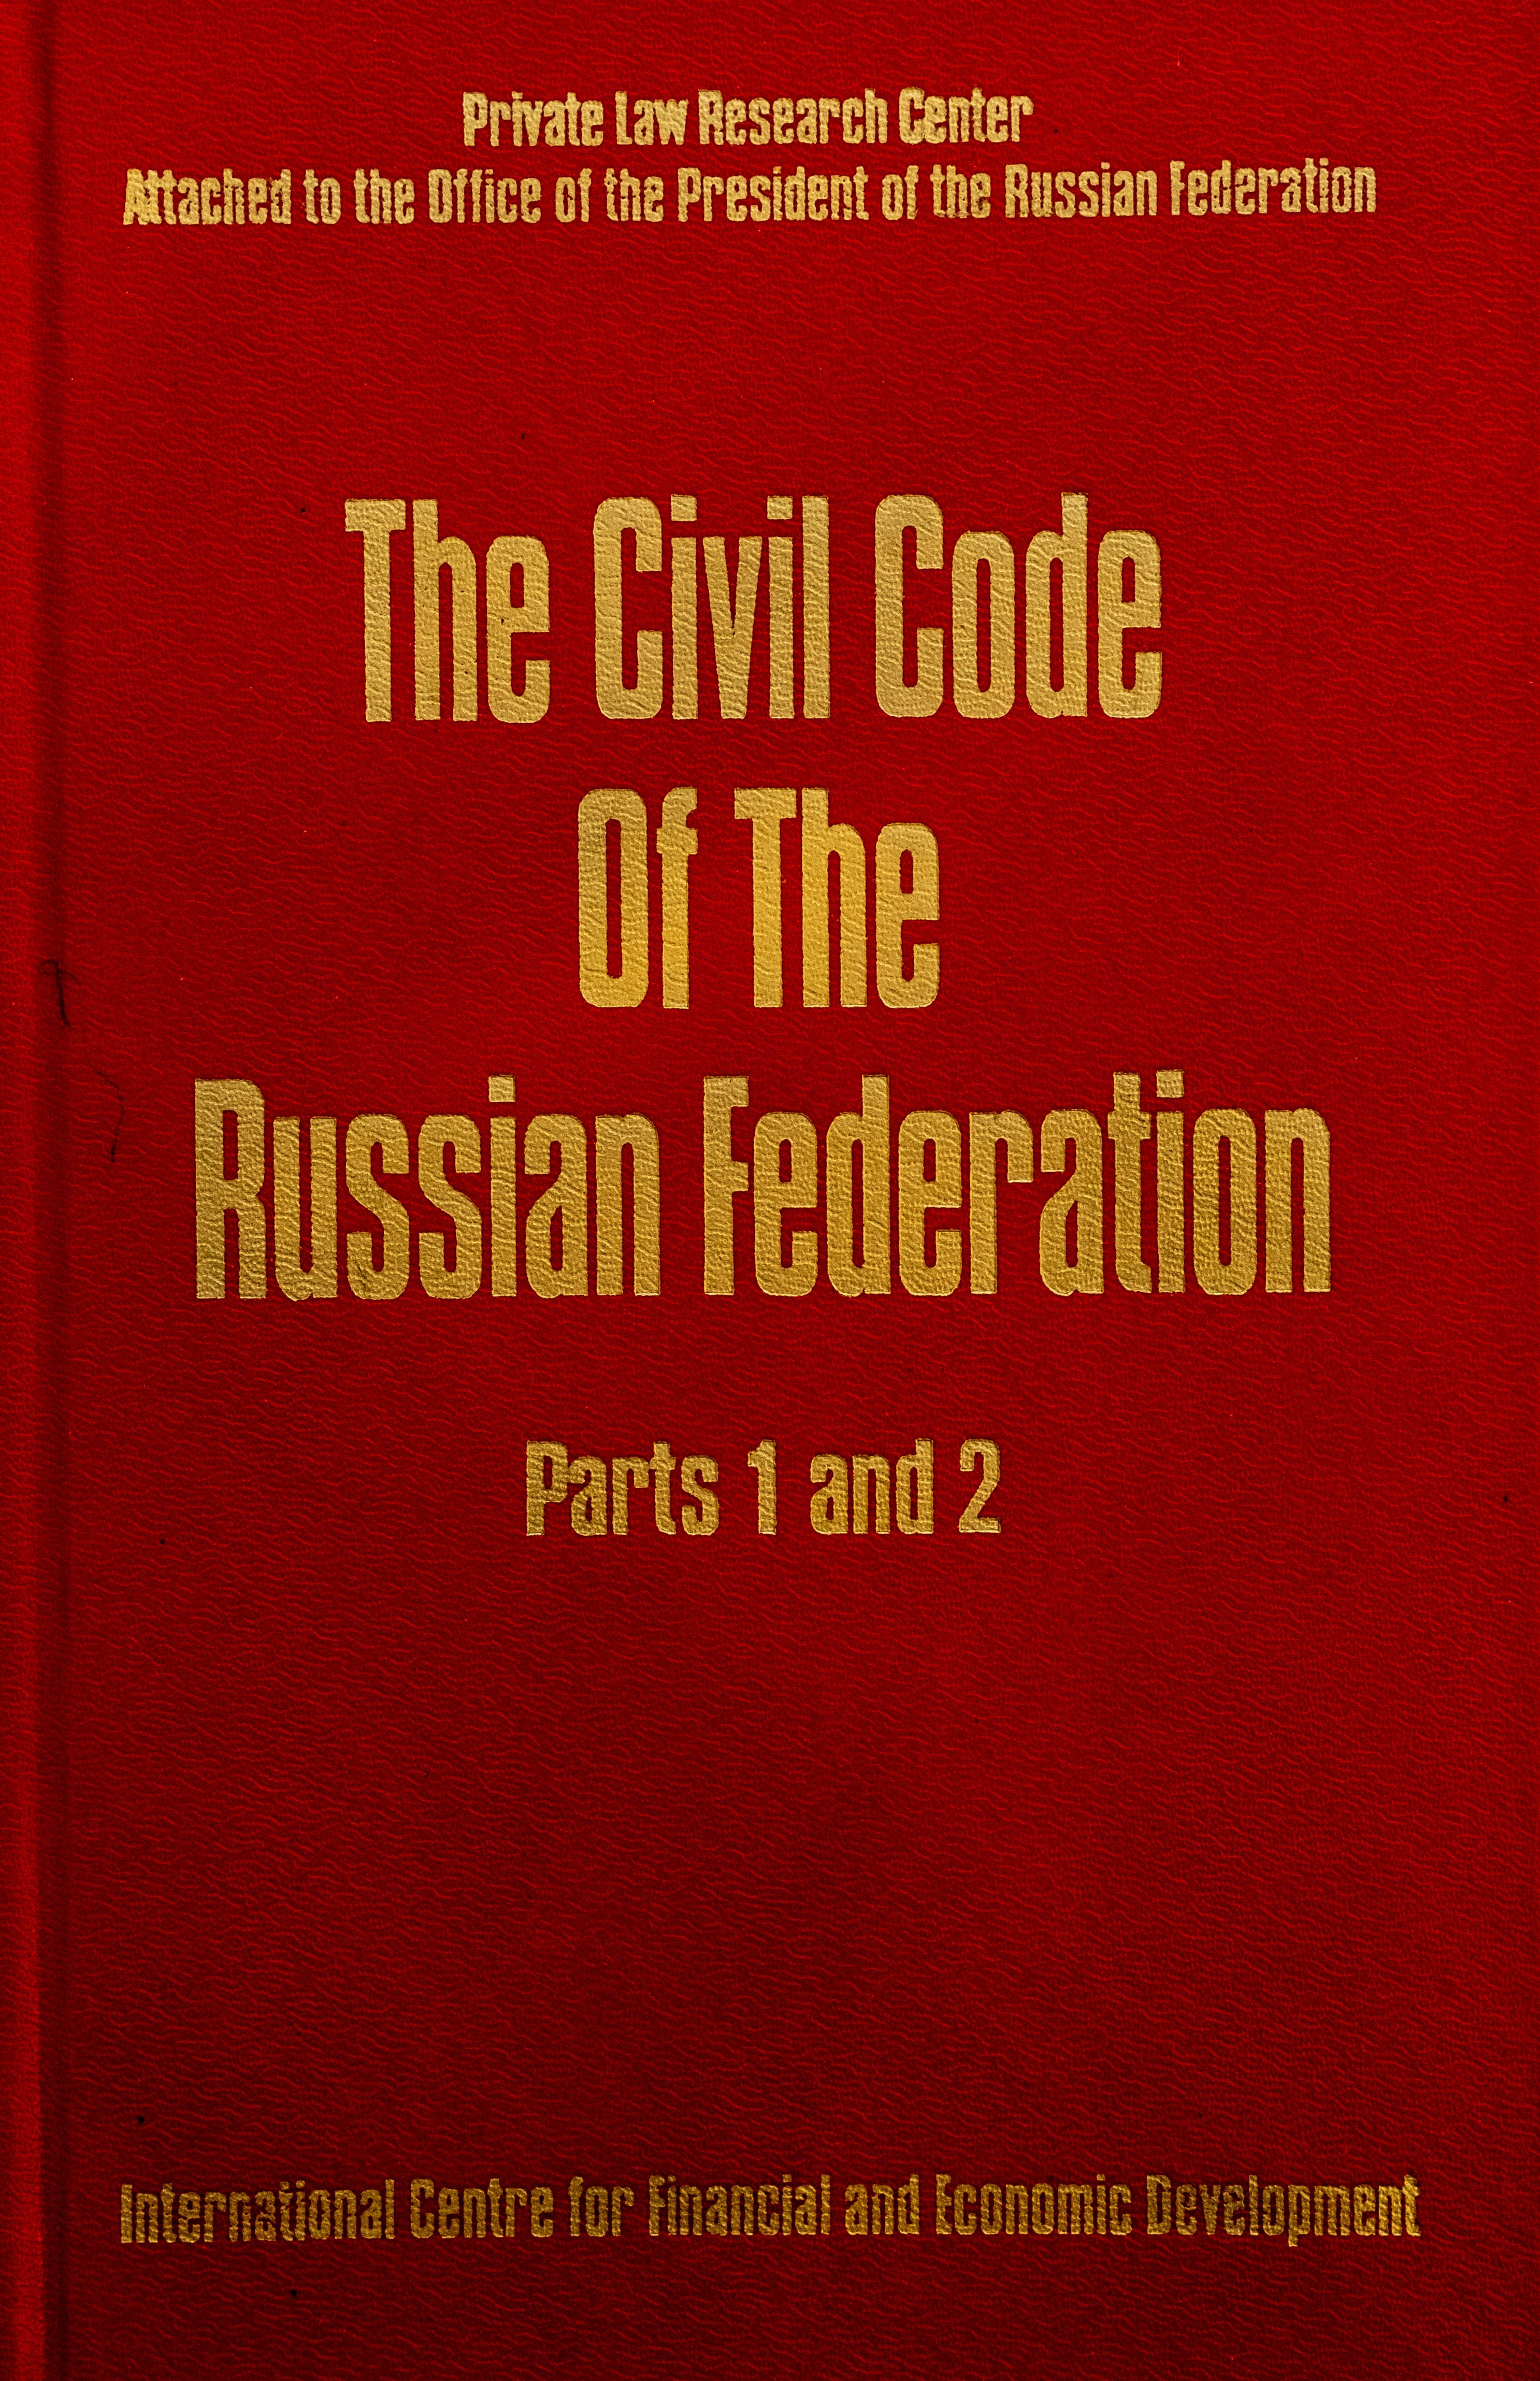 Гражданский кодекс Российской Федерации. Часть 1 и 2 (The Civil Code Of The Russian Federation. Part 1 and 2)